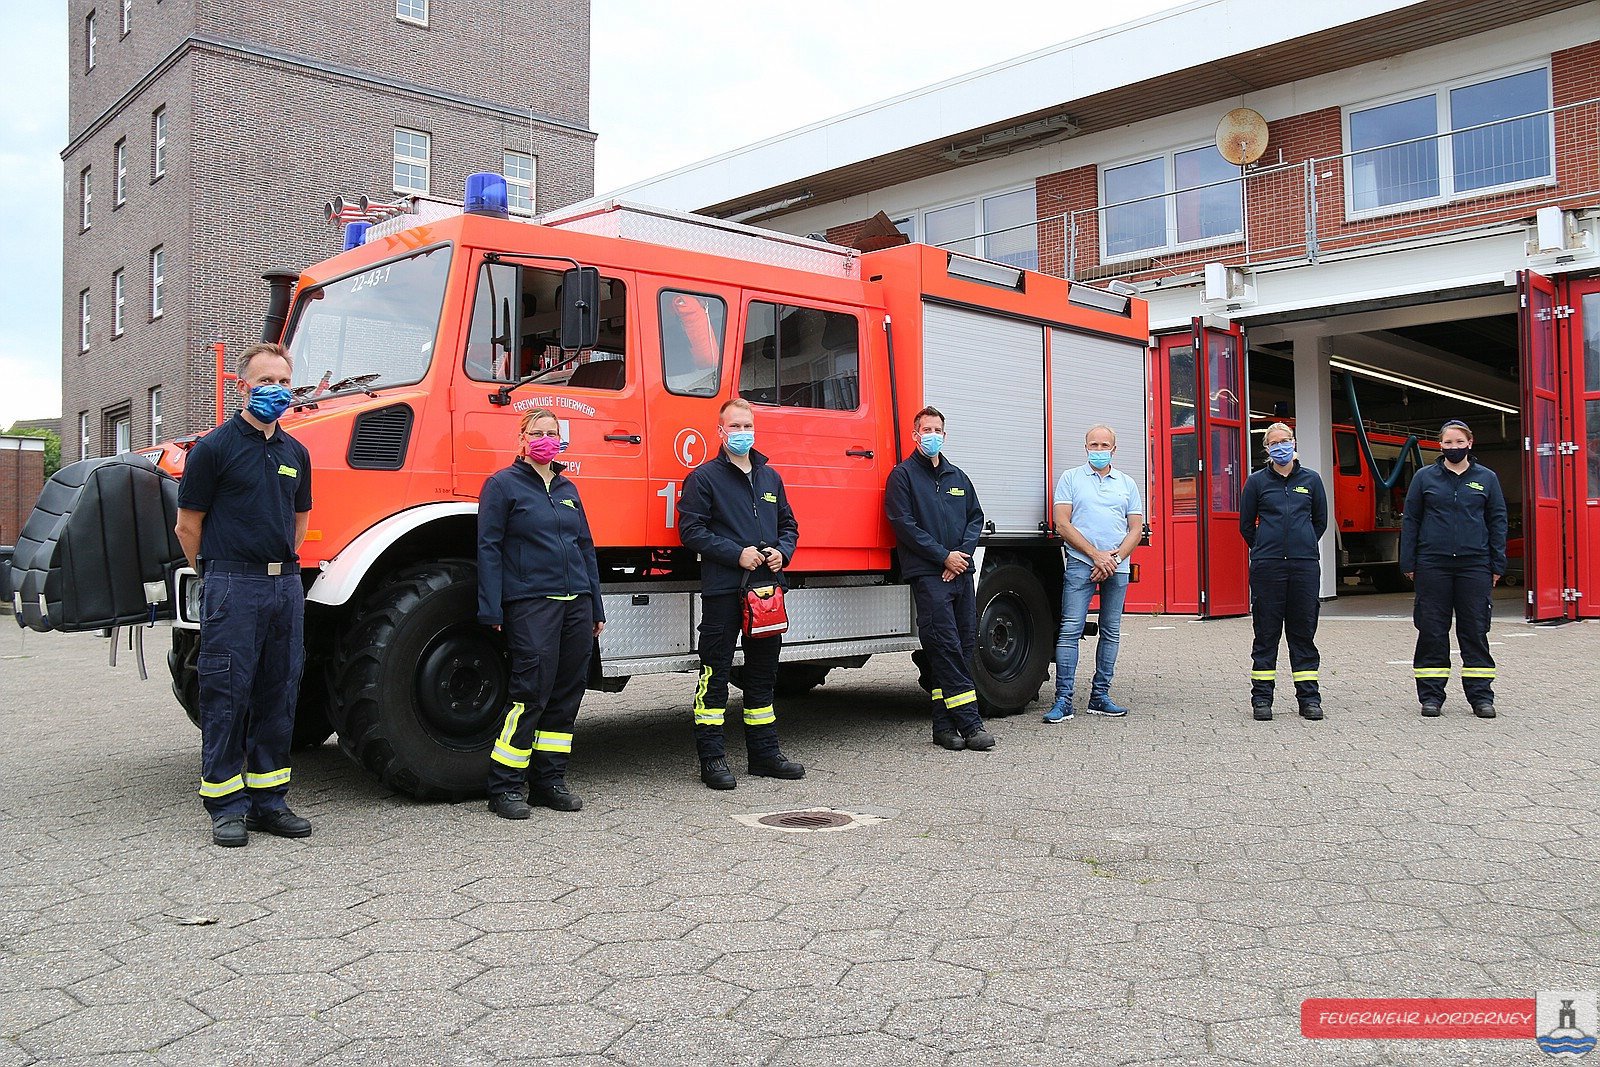 6 neue Ersthelfer bei der Feuerwehr Norderney – Freiwillige Feuerwehr  Norderney